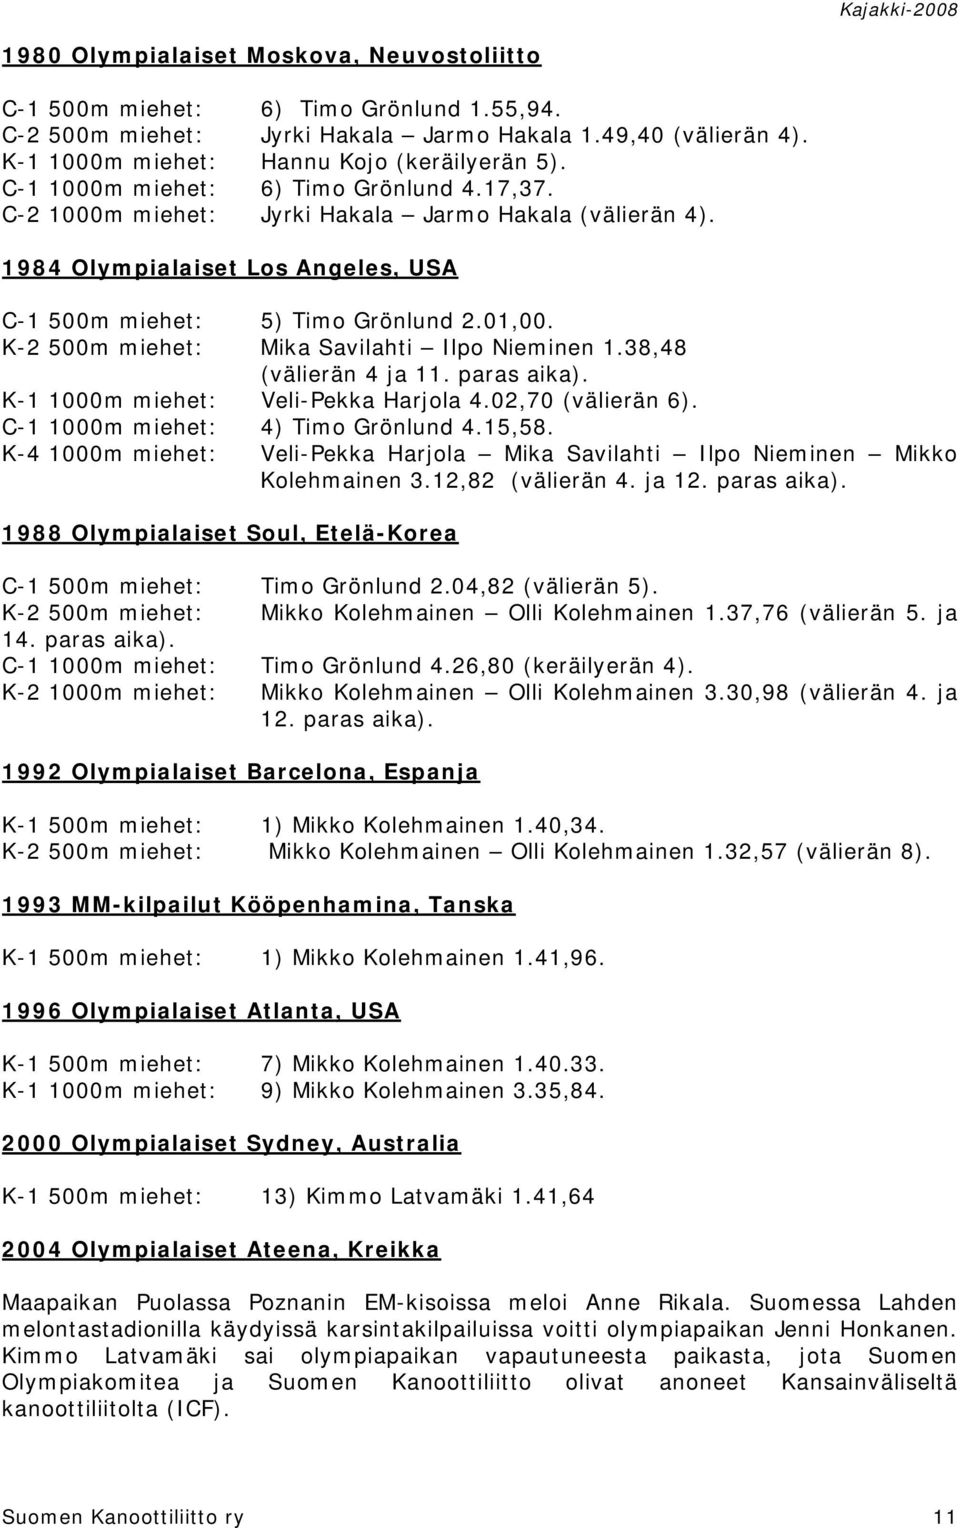 K-2 500m miehet: Mika Savilahti Ilpo Nieminen 1.38,48 (välierän 4 ja 11. paras aika). K-1 1000m miehet: Veli-Pekka Harjola 4.02,70 (välierän 6). C-1 1000m miehet: 4) Timo Grönlund 4.15,58.